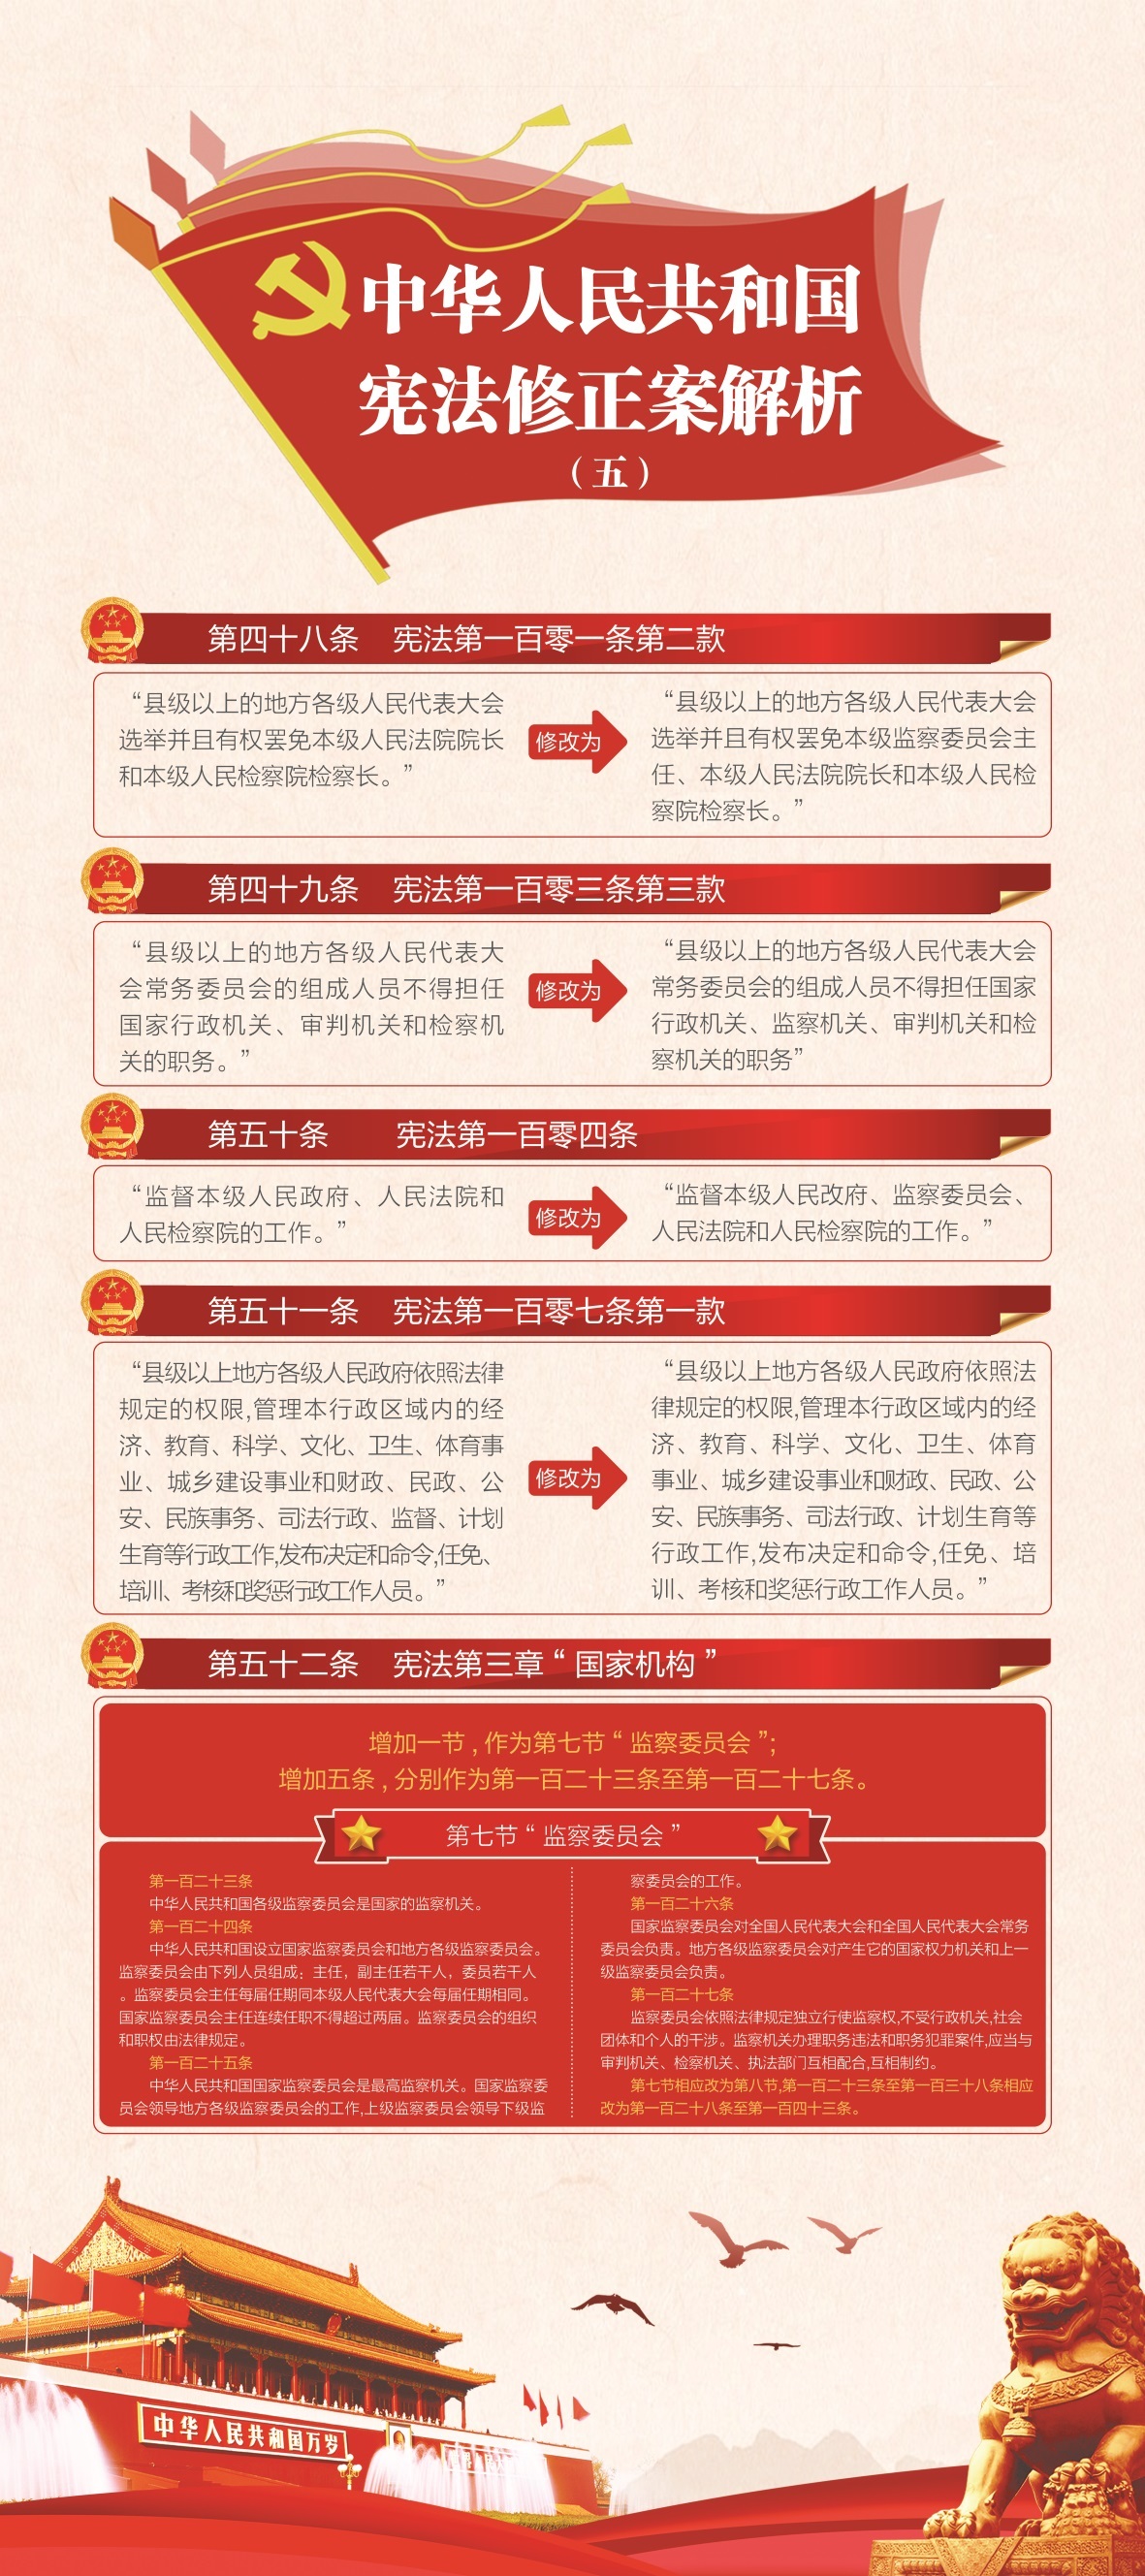 中国电信系列展架设计图3